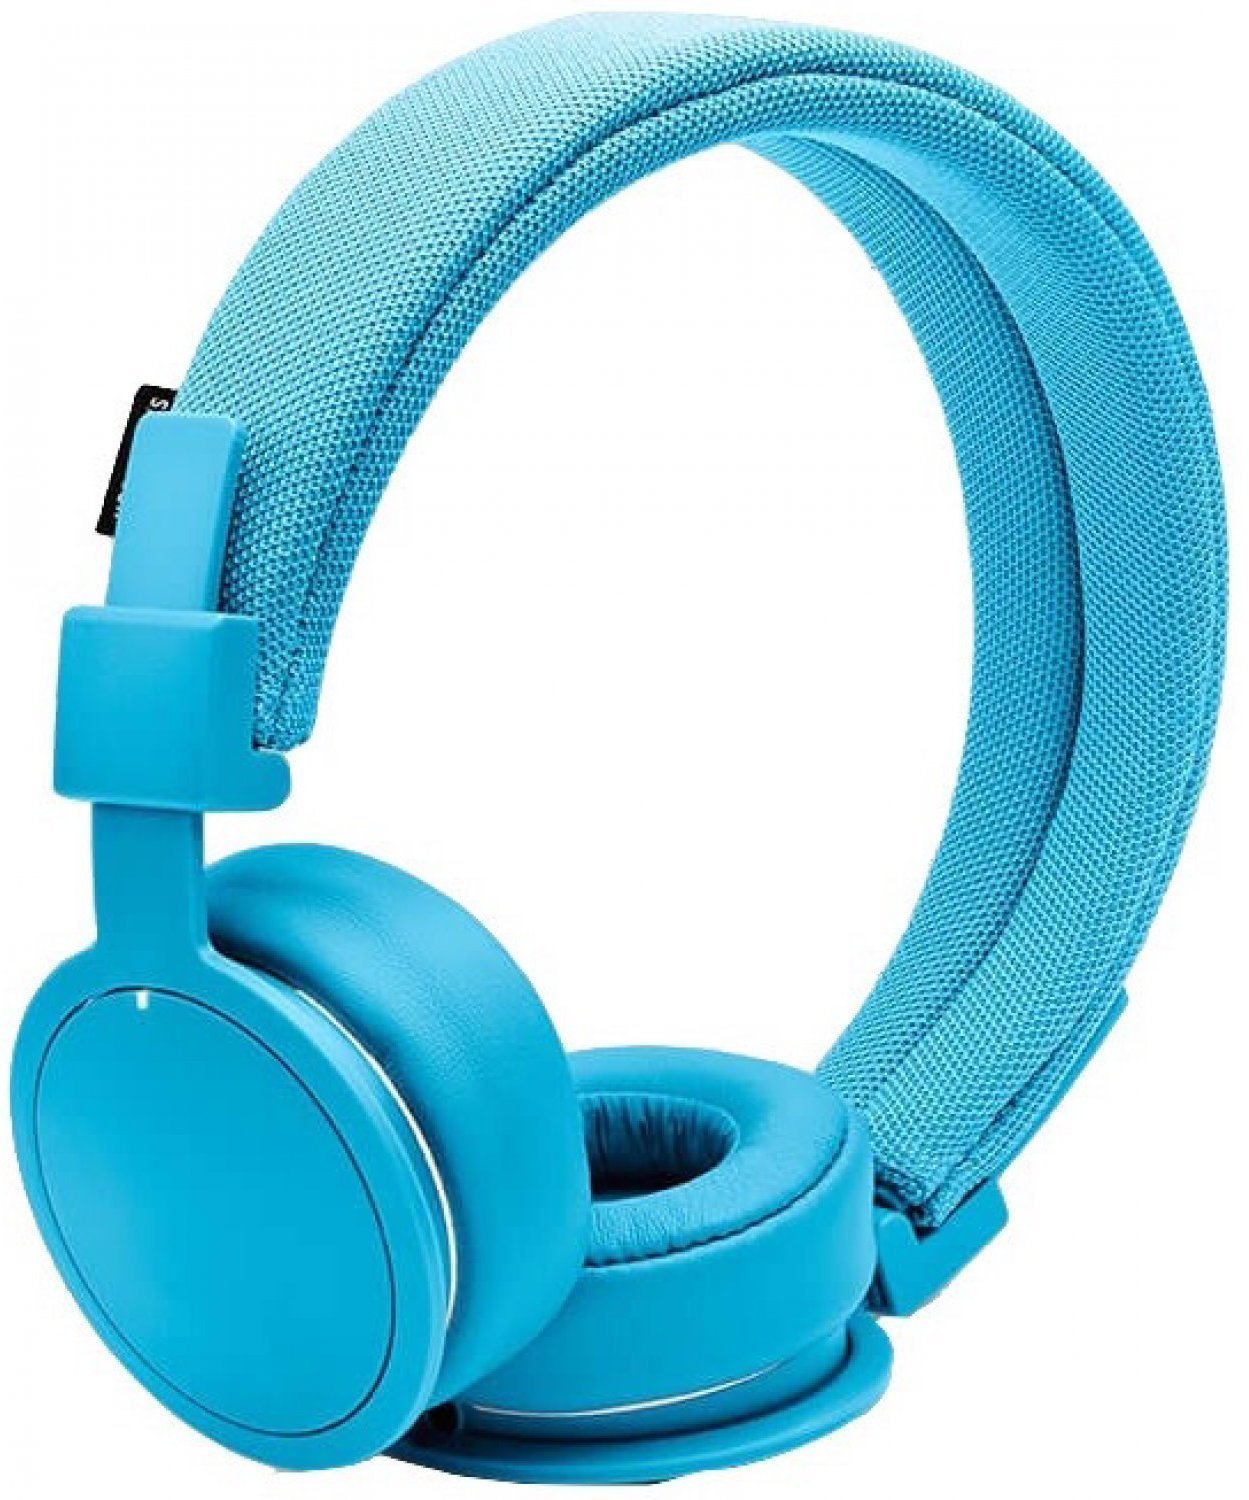 Wireless On-ear headphones UrbanEars Plattan ADV Wireless Malibu